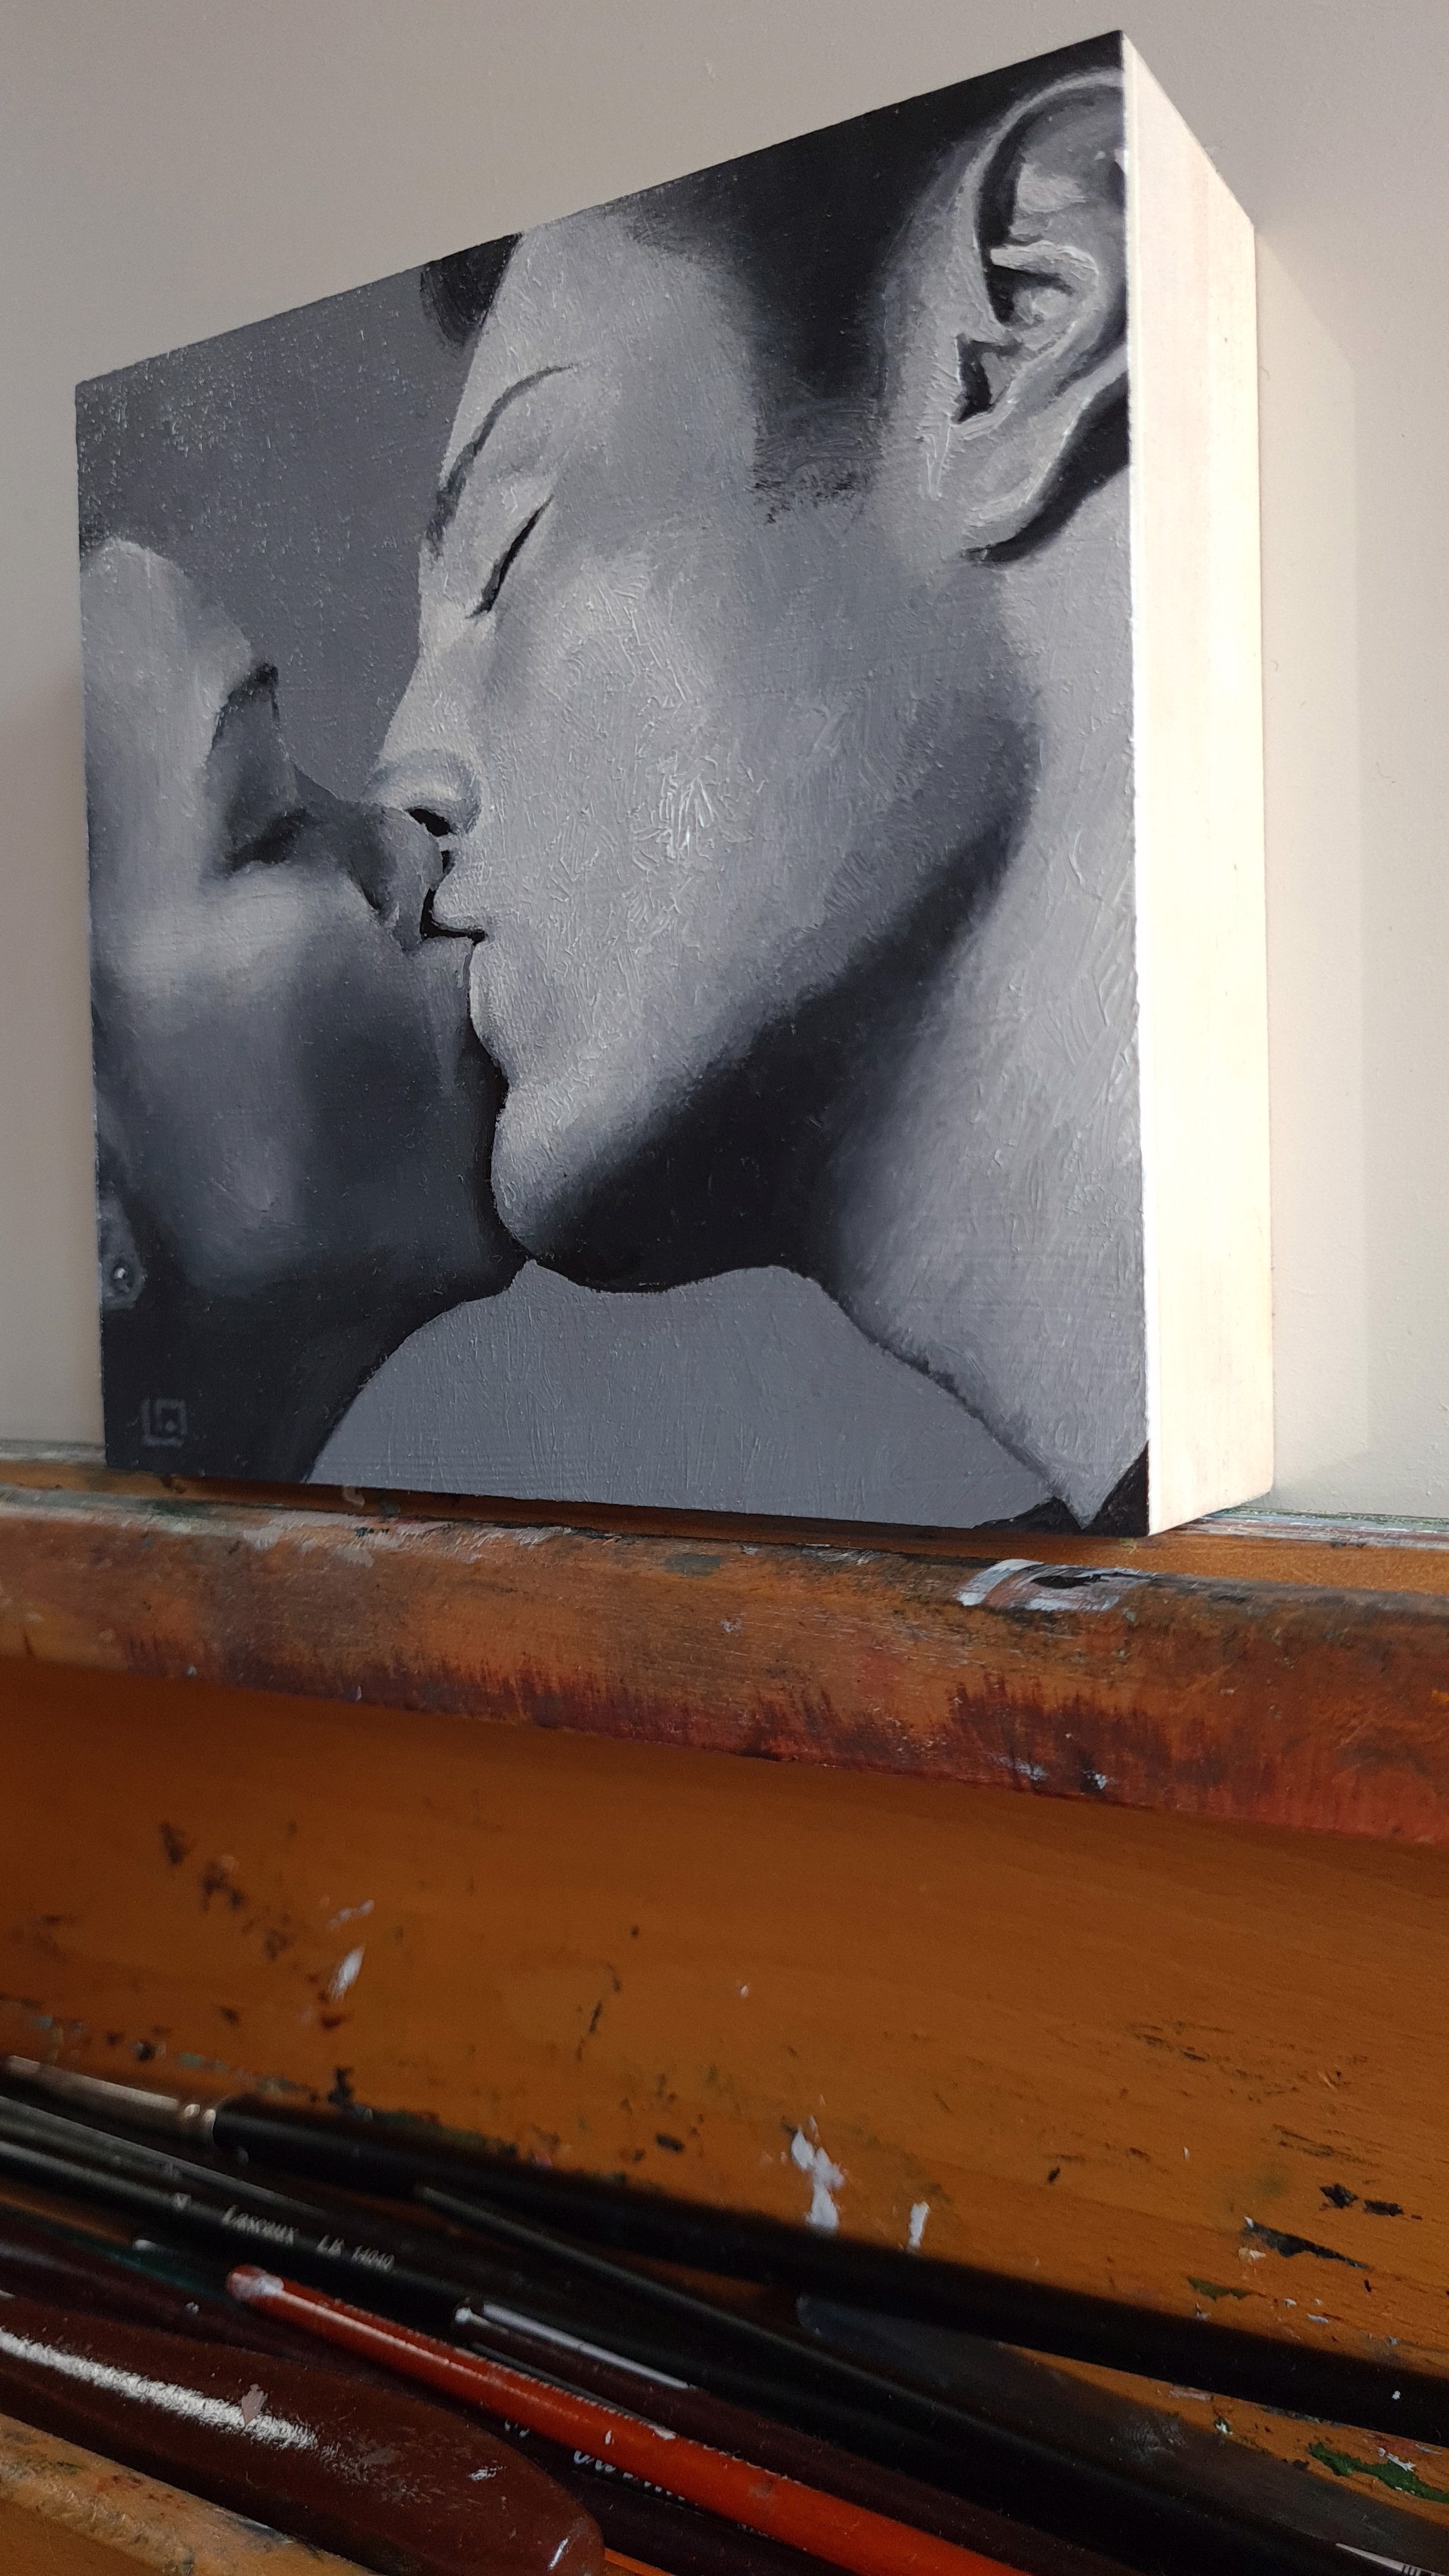 The Kiss #4 by Linda Adair